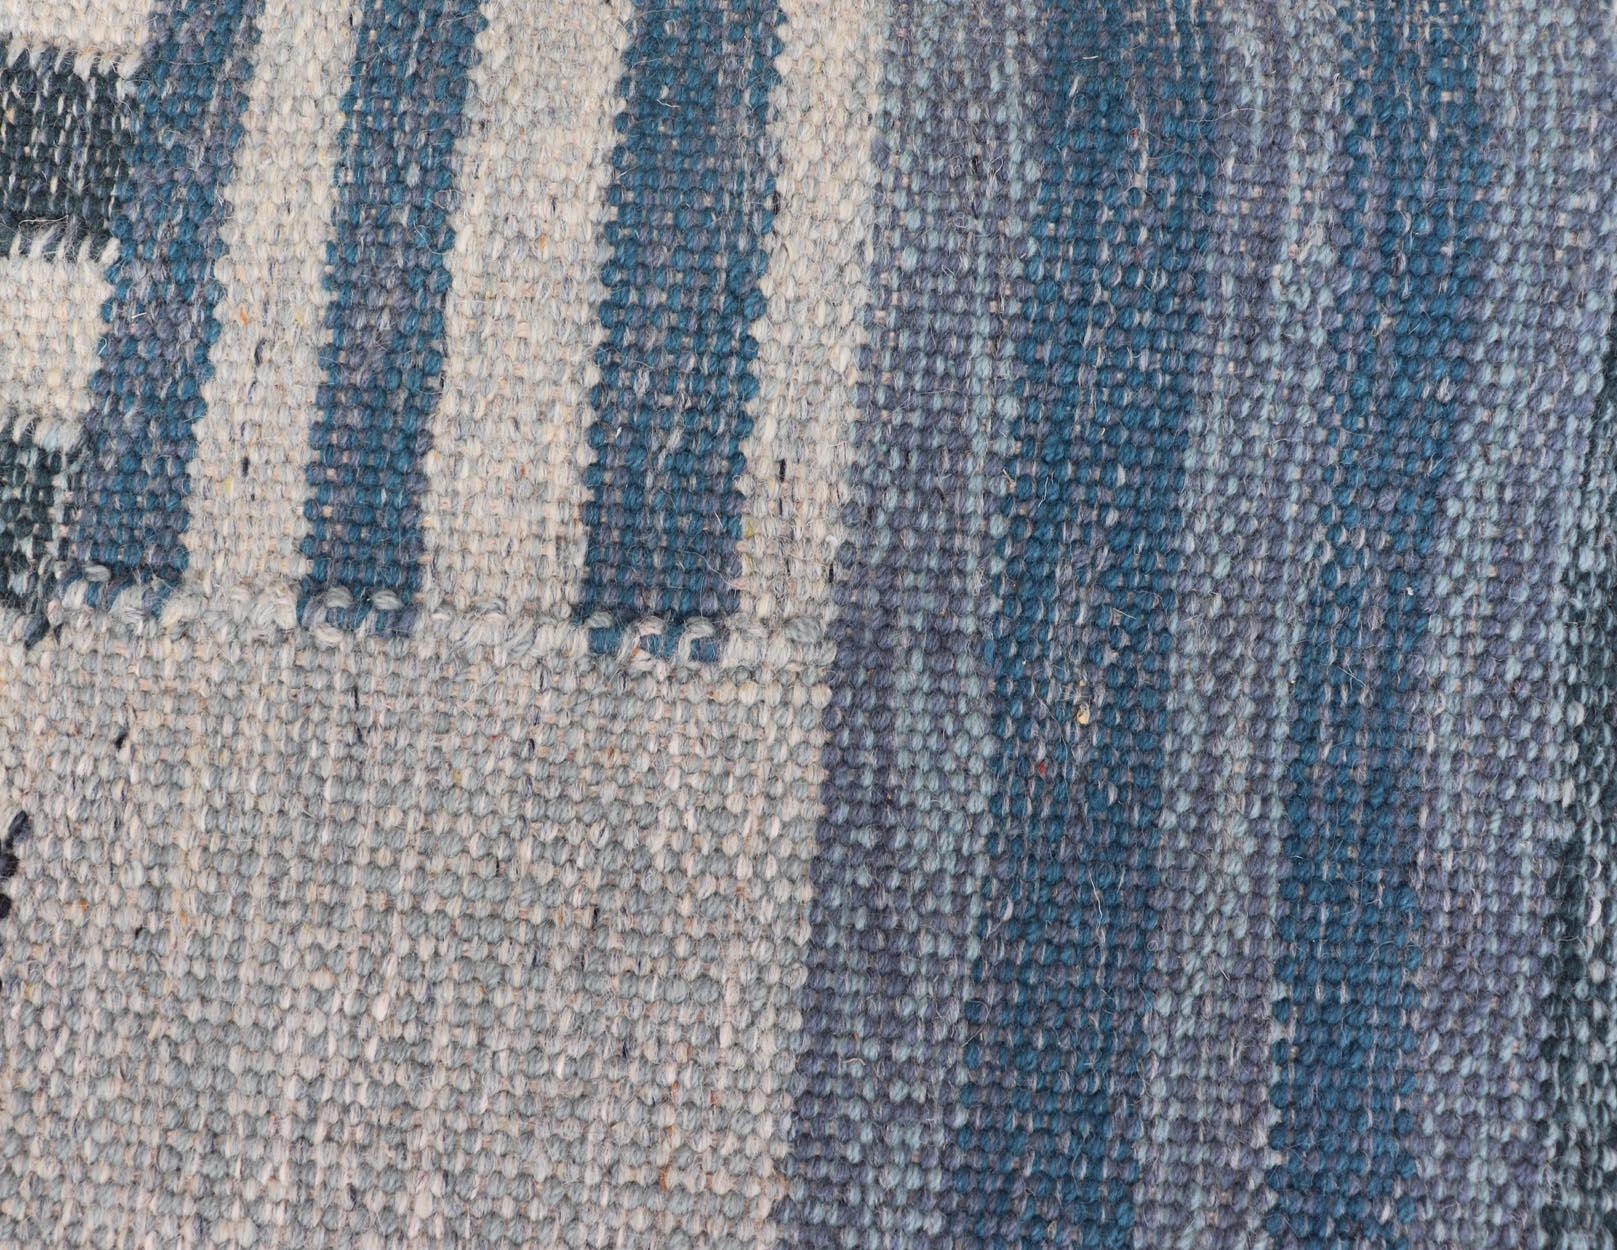 Flachgewebe-Teppich im skandinavischen Stil mit modernem Design in Grau, Schwarz und Blau. Keivan Woven Arts, Teppich RJK-30118-SHB-183, Herkunftsland / Art: Indien / Skandinavisches Flachgewebe.
Maße: 9'2 x 11'7 
Dieses skandinavische Flachgewebe